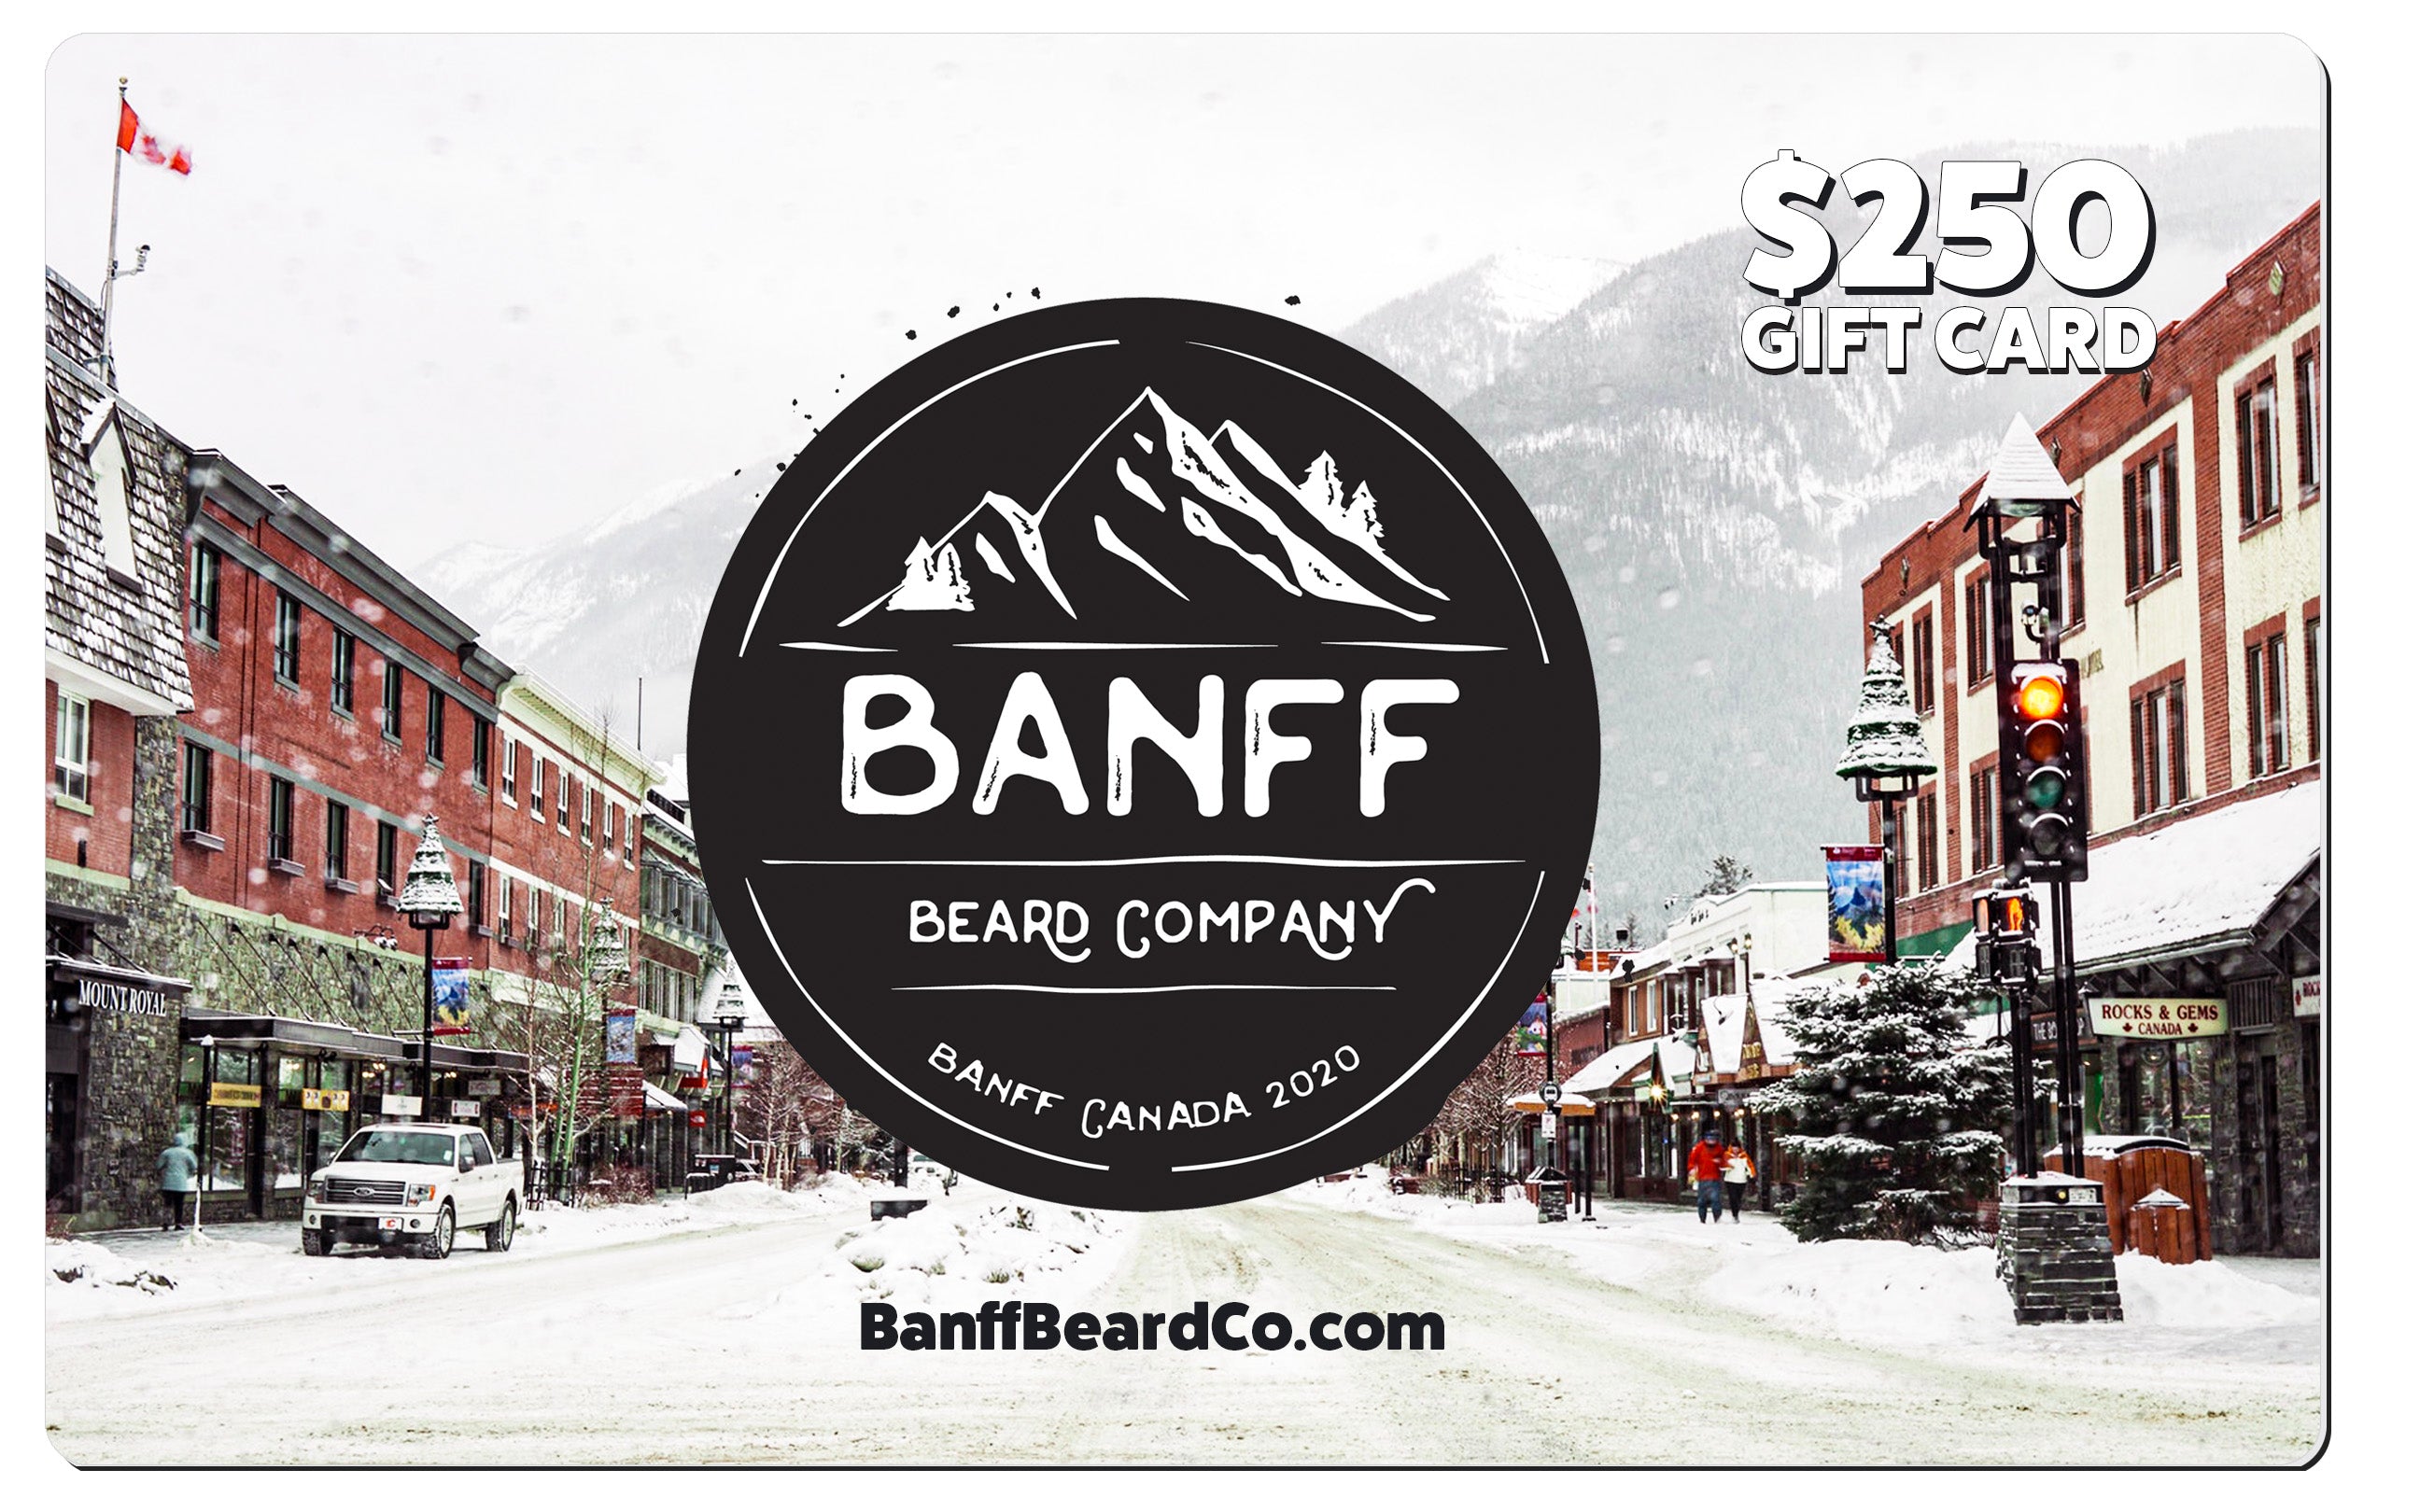 Banff Beard Co Gift Card